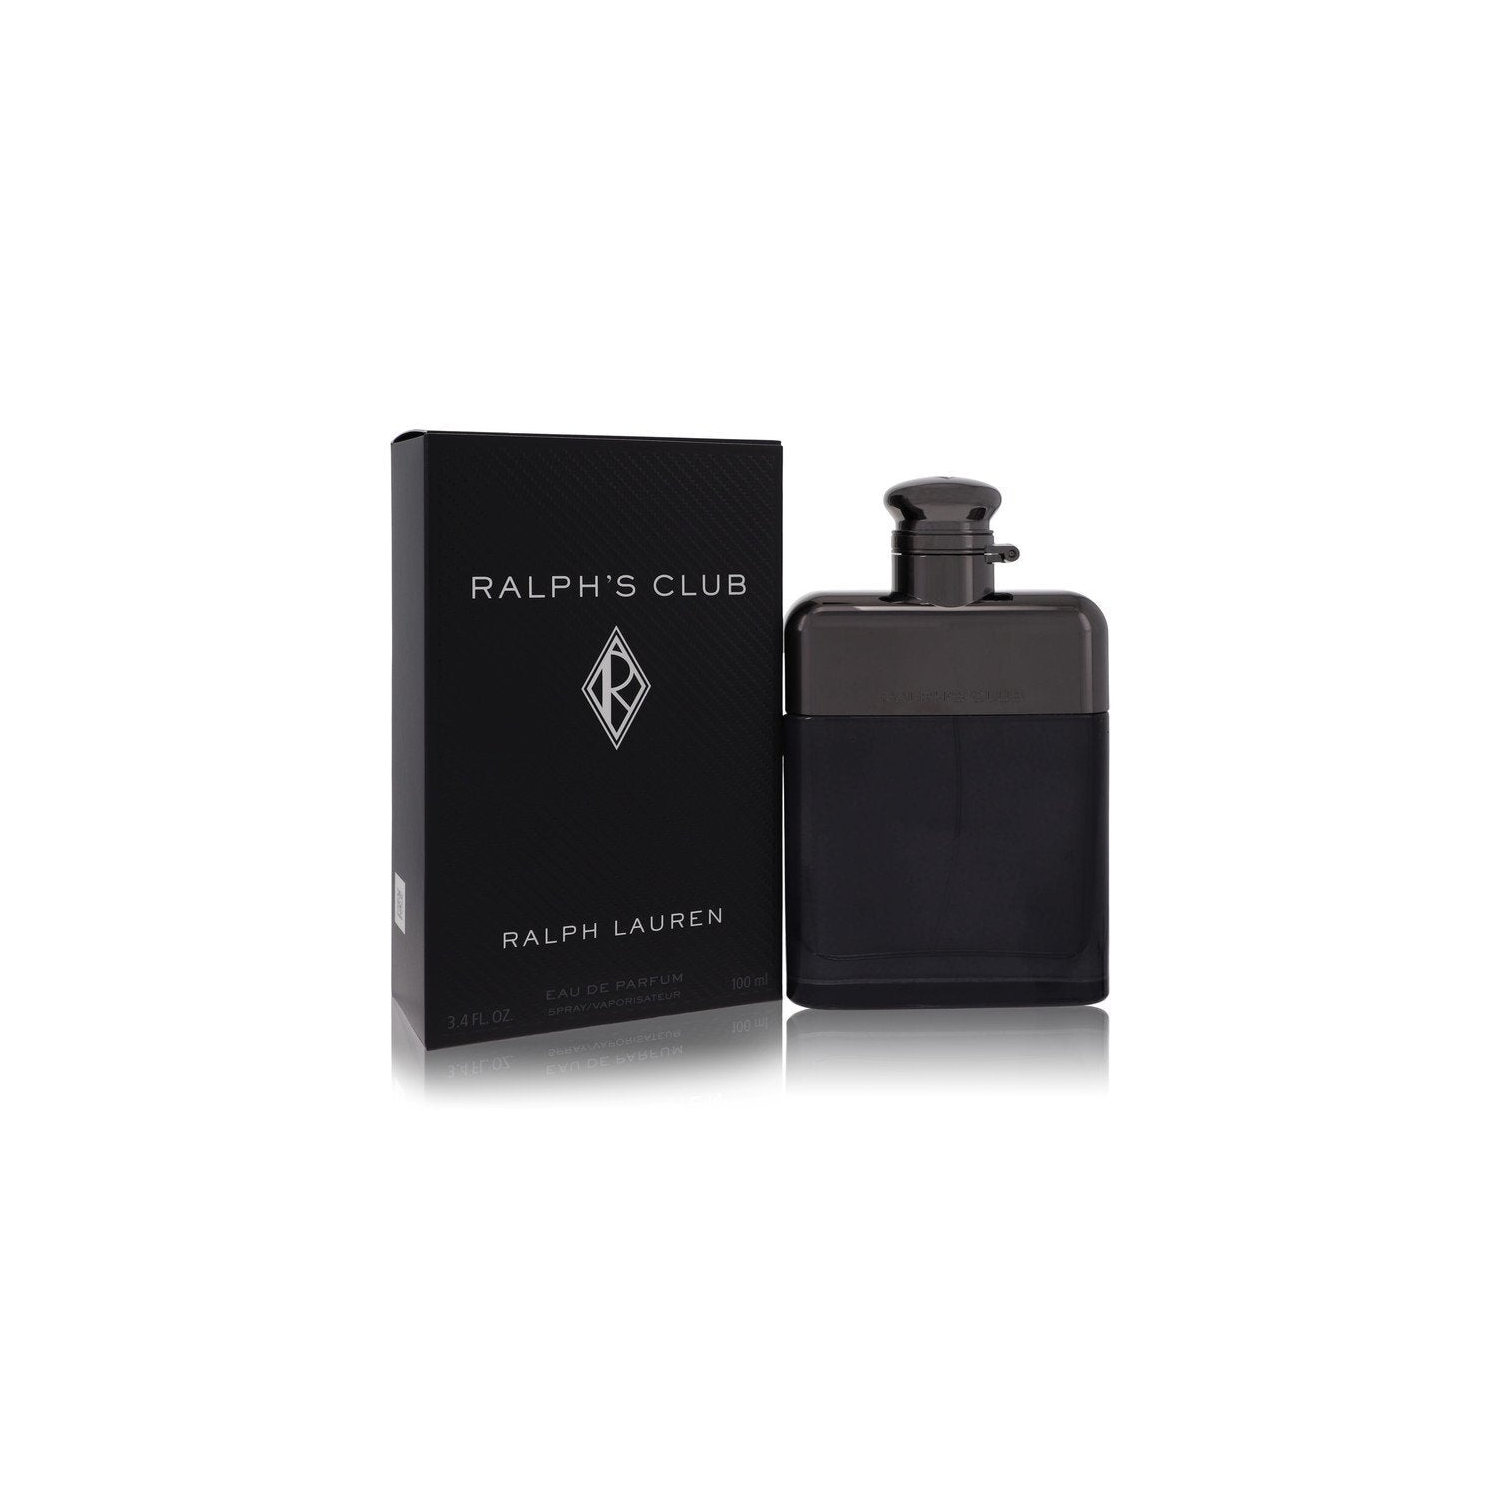 Ralph Lauren Eau De Parfum, Ralph's Club, Spray - 1.7 fl oz